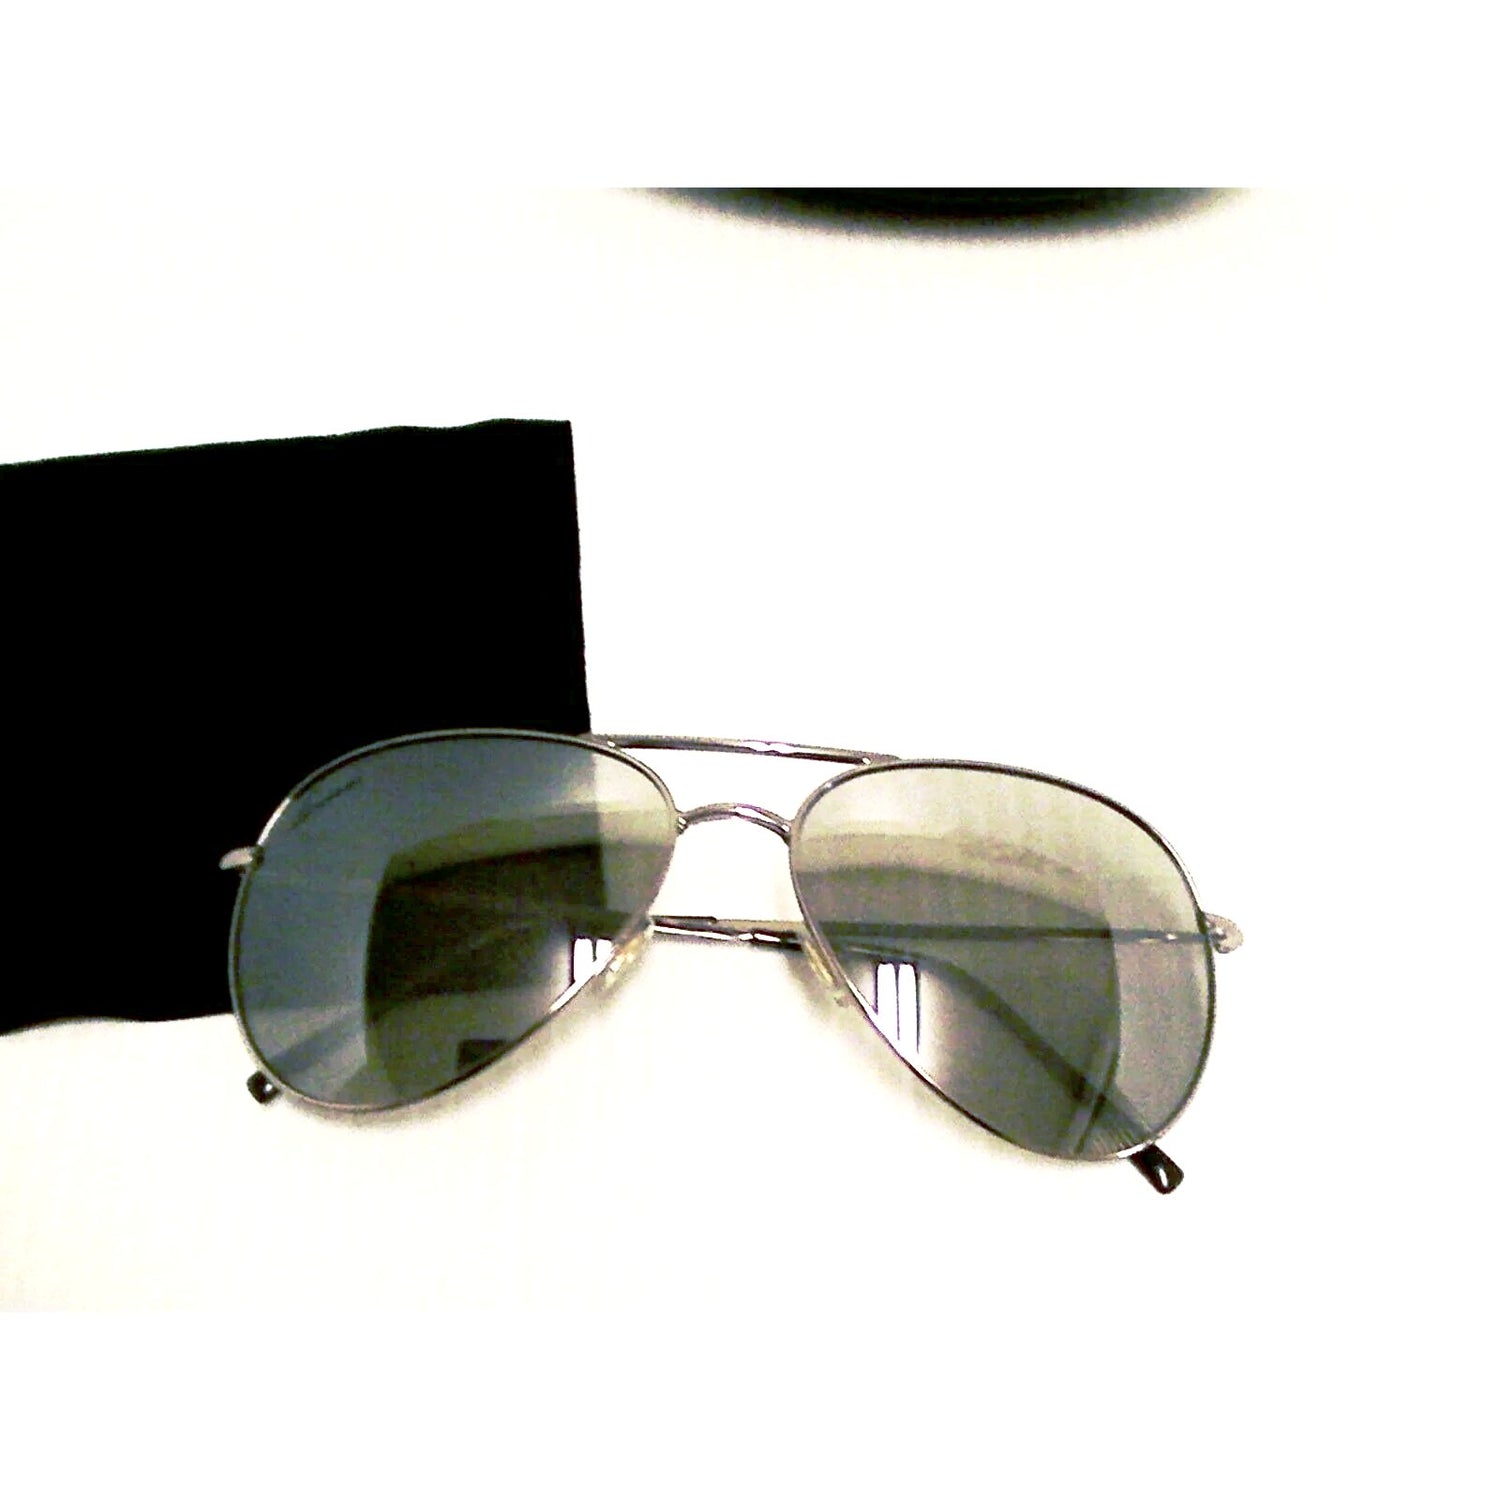 Gucci New sunglasses gg 1287/s half mirror silver frame gray lenses authentic